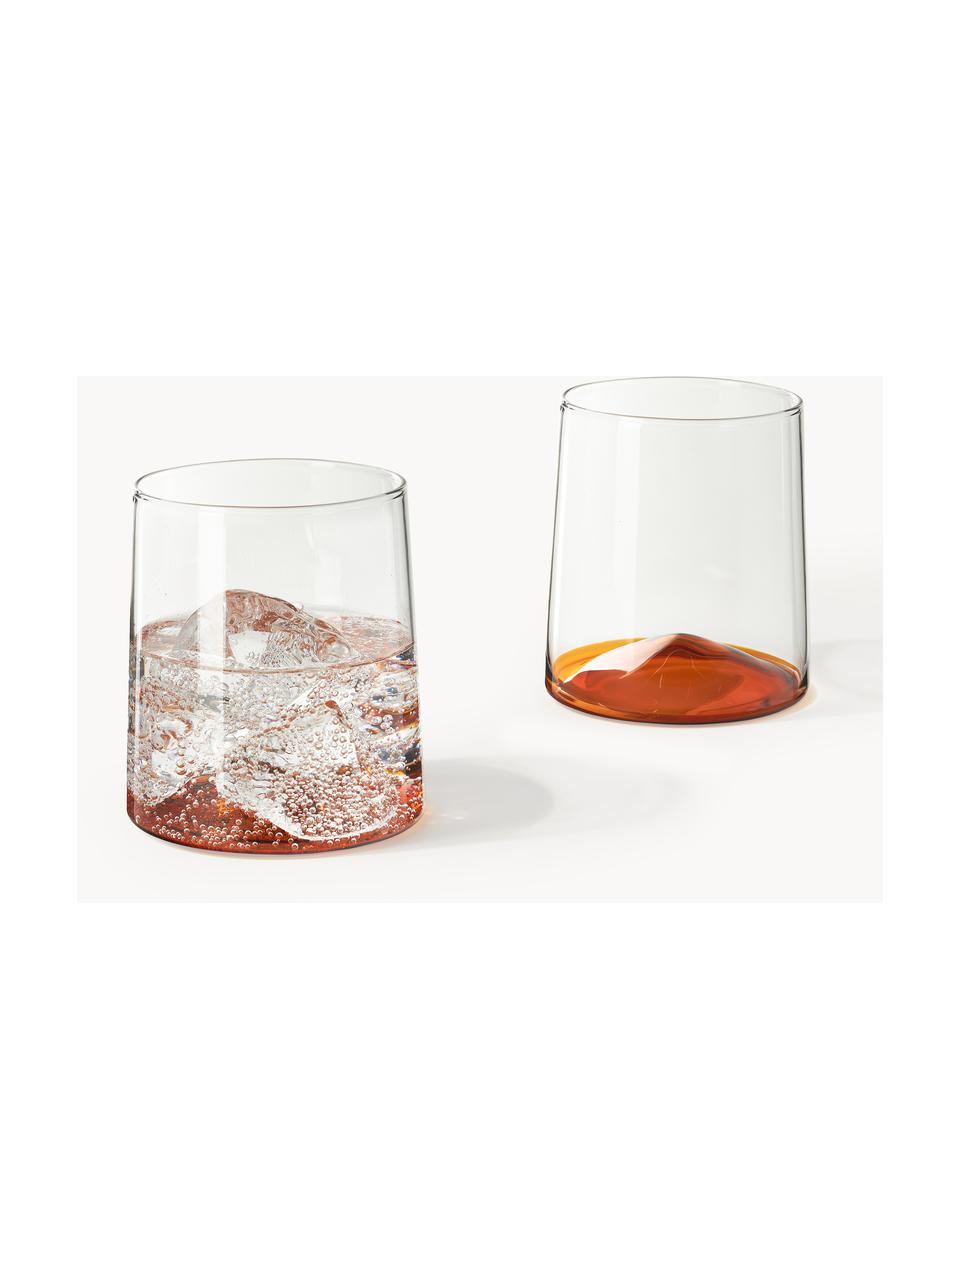 Bicchieri per acqua in vetro soffiato Hadley 4 pz, Vetro borosilicato soffiato

Scopri la versatilità delle stoviglie in vetro borosilicato per la tua casa! 
Il vetro borosilicato è un materiale di alta qualità, affidabile e robusto. È caratterizzato da un'eccezionale resistenza al calore e può quindi sopportare temperature estreme. È quindi particolarmente adatto per le bevande calde. Rispetto al vetro tradizionale, il vetro borosilicato è più resistente alla rottura e alle incrinature grazie alla sua composizione e struttura., Trasparente, arancione, Ø 9 x Alt. 10 cm, 400 ml